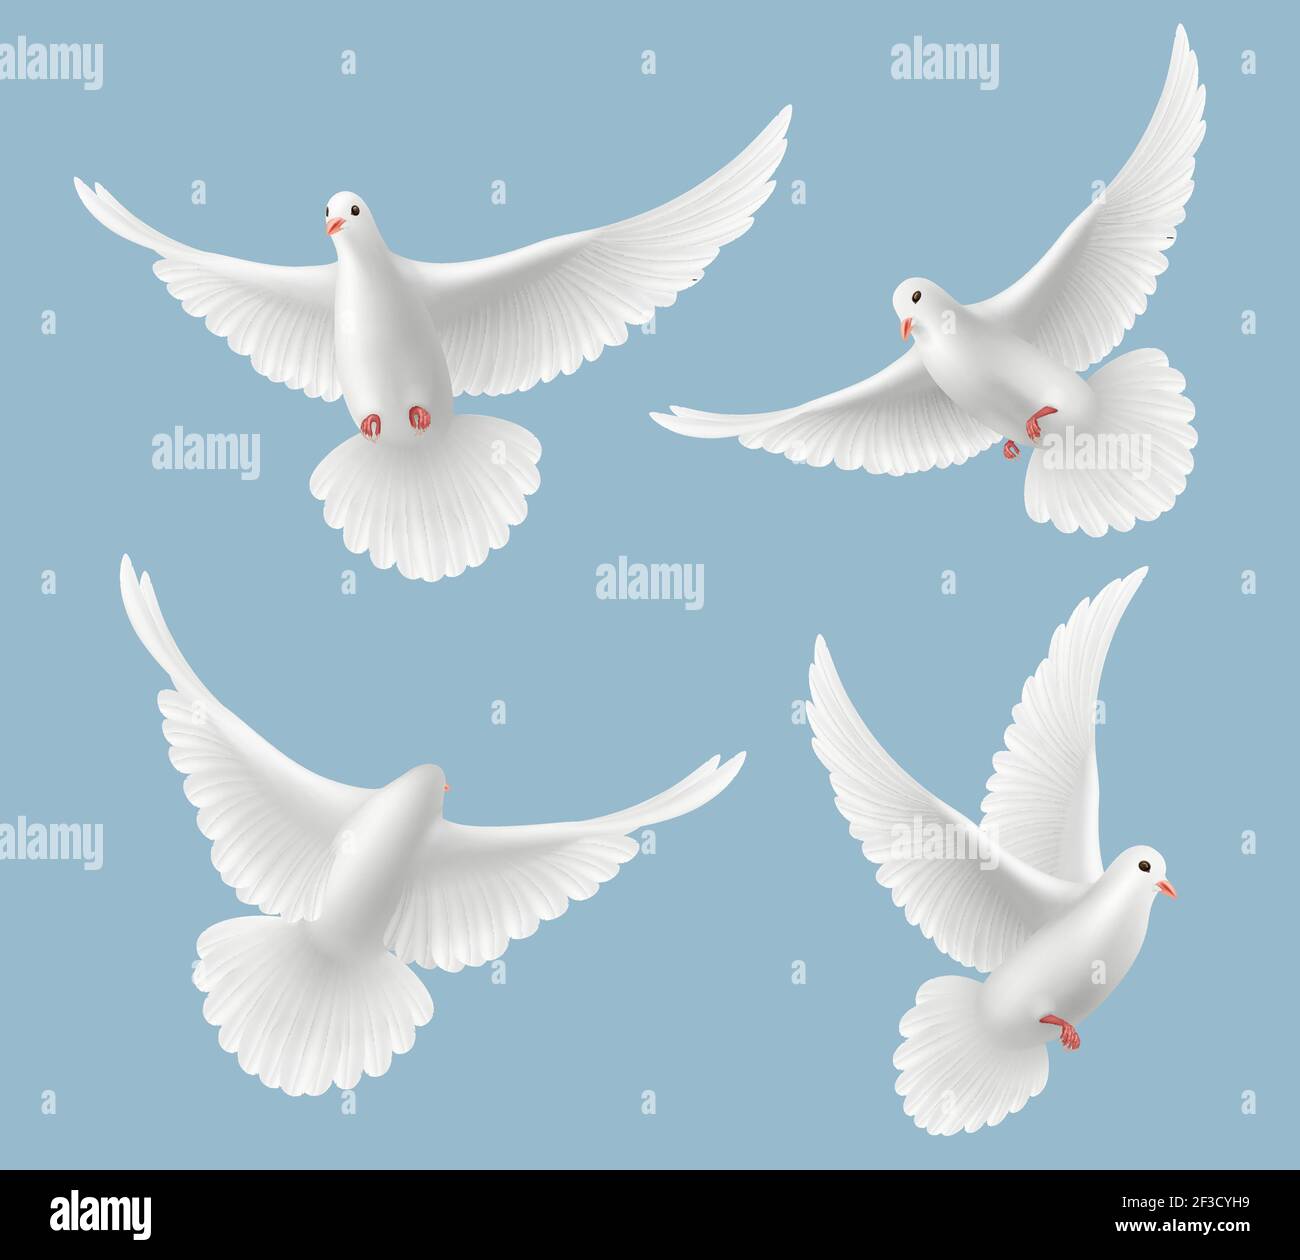 Weiße Tauben. Taube lieben fliegende Vögel in Himmel Symbole der Freiheit und Hochzeit Vektor realistische Bilder Stock Vektor